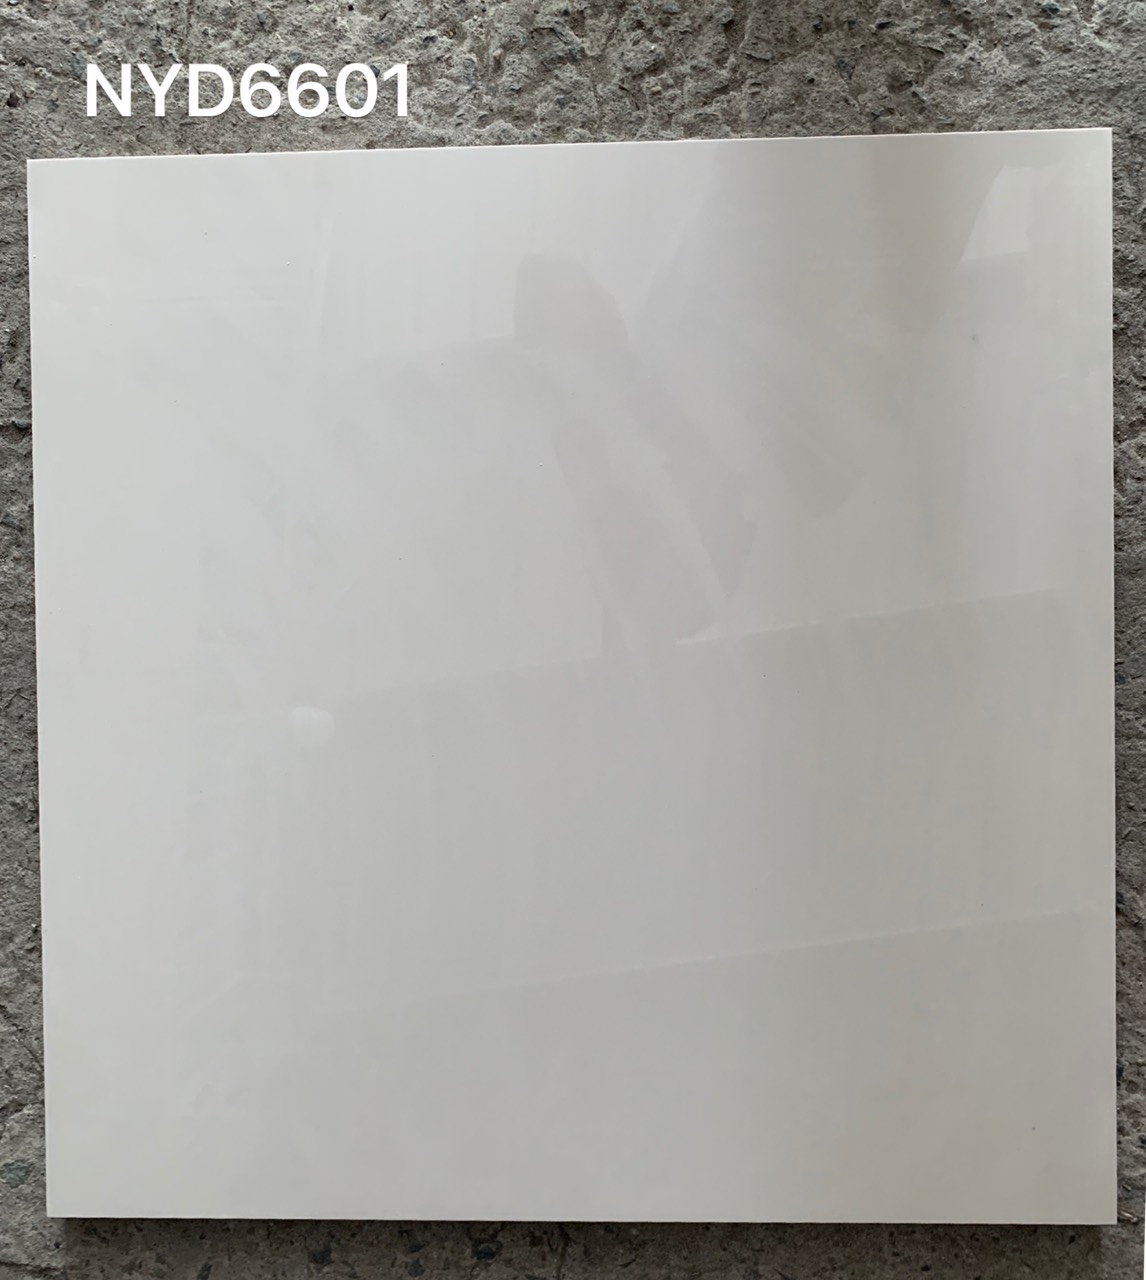 Gạch ốp lát Viglacera 60x60 NYD6601 Giá bán rẻ nhất Hà Nội.